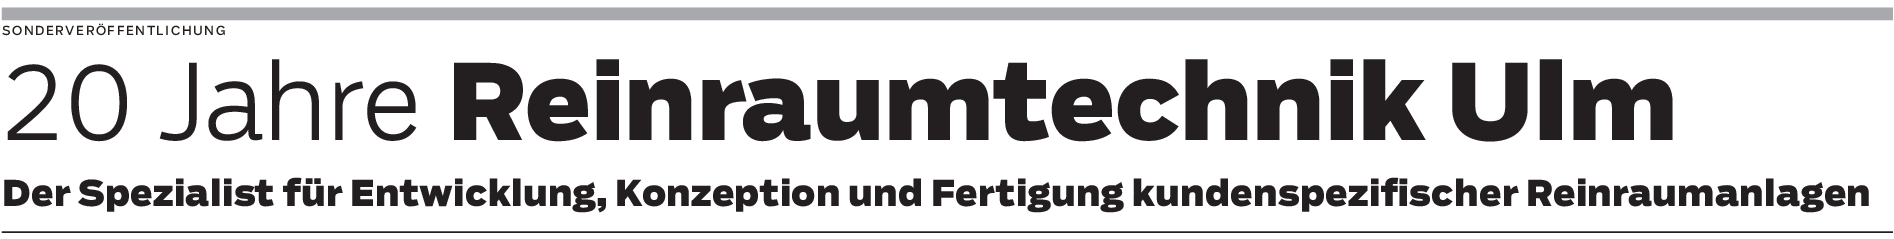 Reinraumtechnik Ulm: Kompromisslos sicher